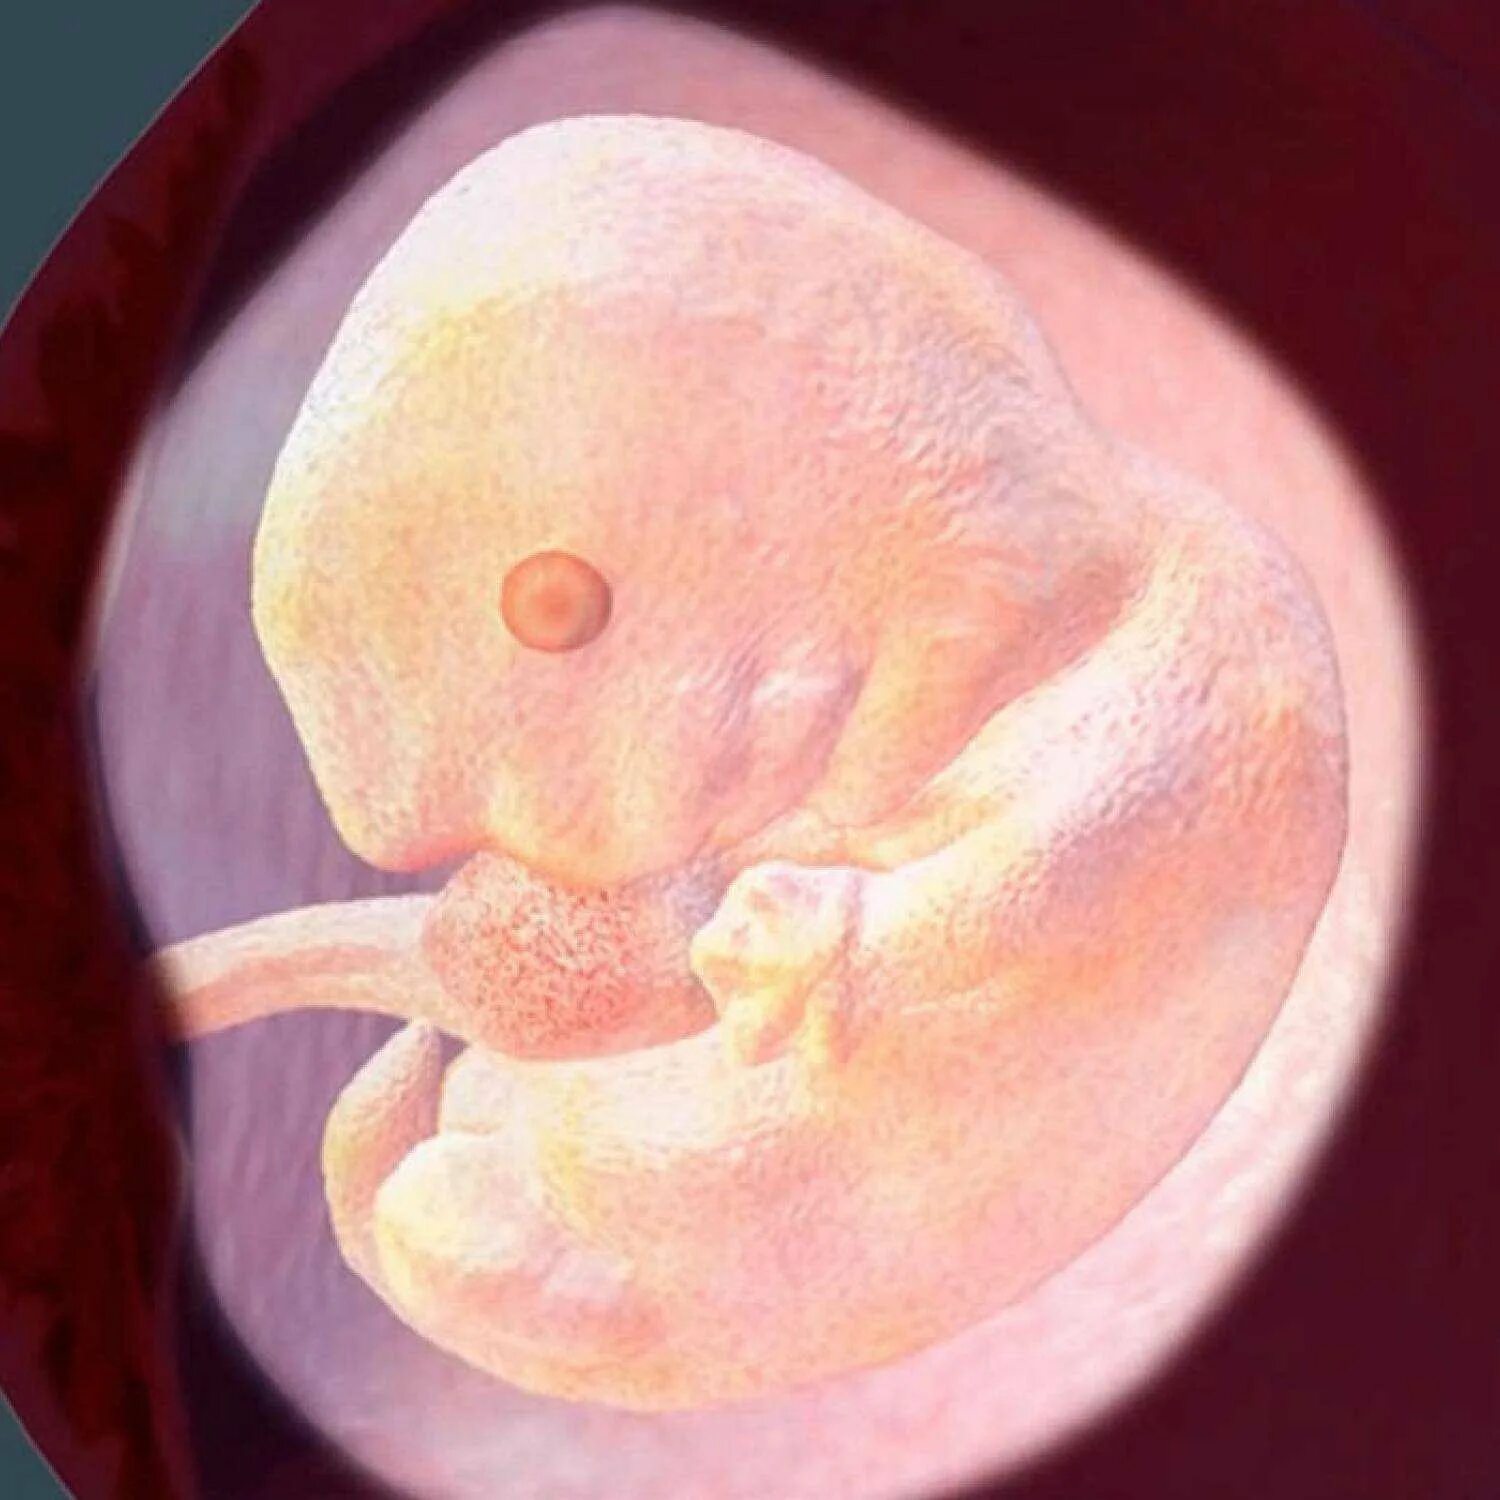 Малыш на 8 акушерской неделе беременности. 8 Недель беременности фото плода. Эмбрион на 8 неделе беременности. Эмбрион на 8 неделе акушерской беременности.